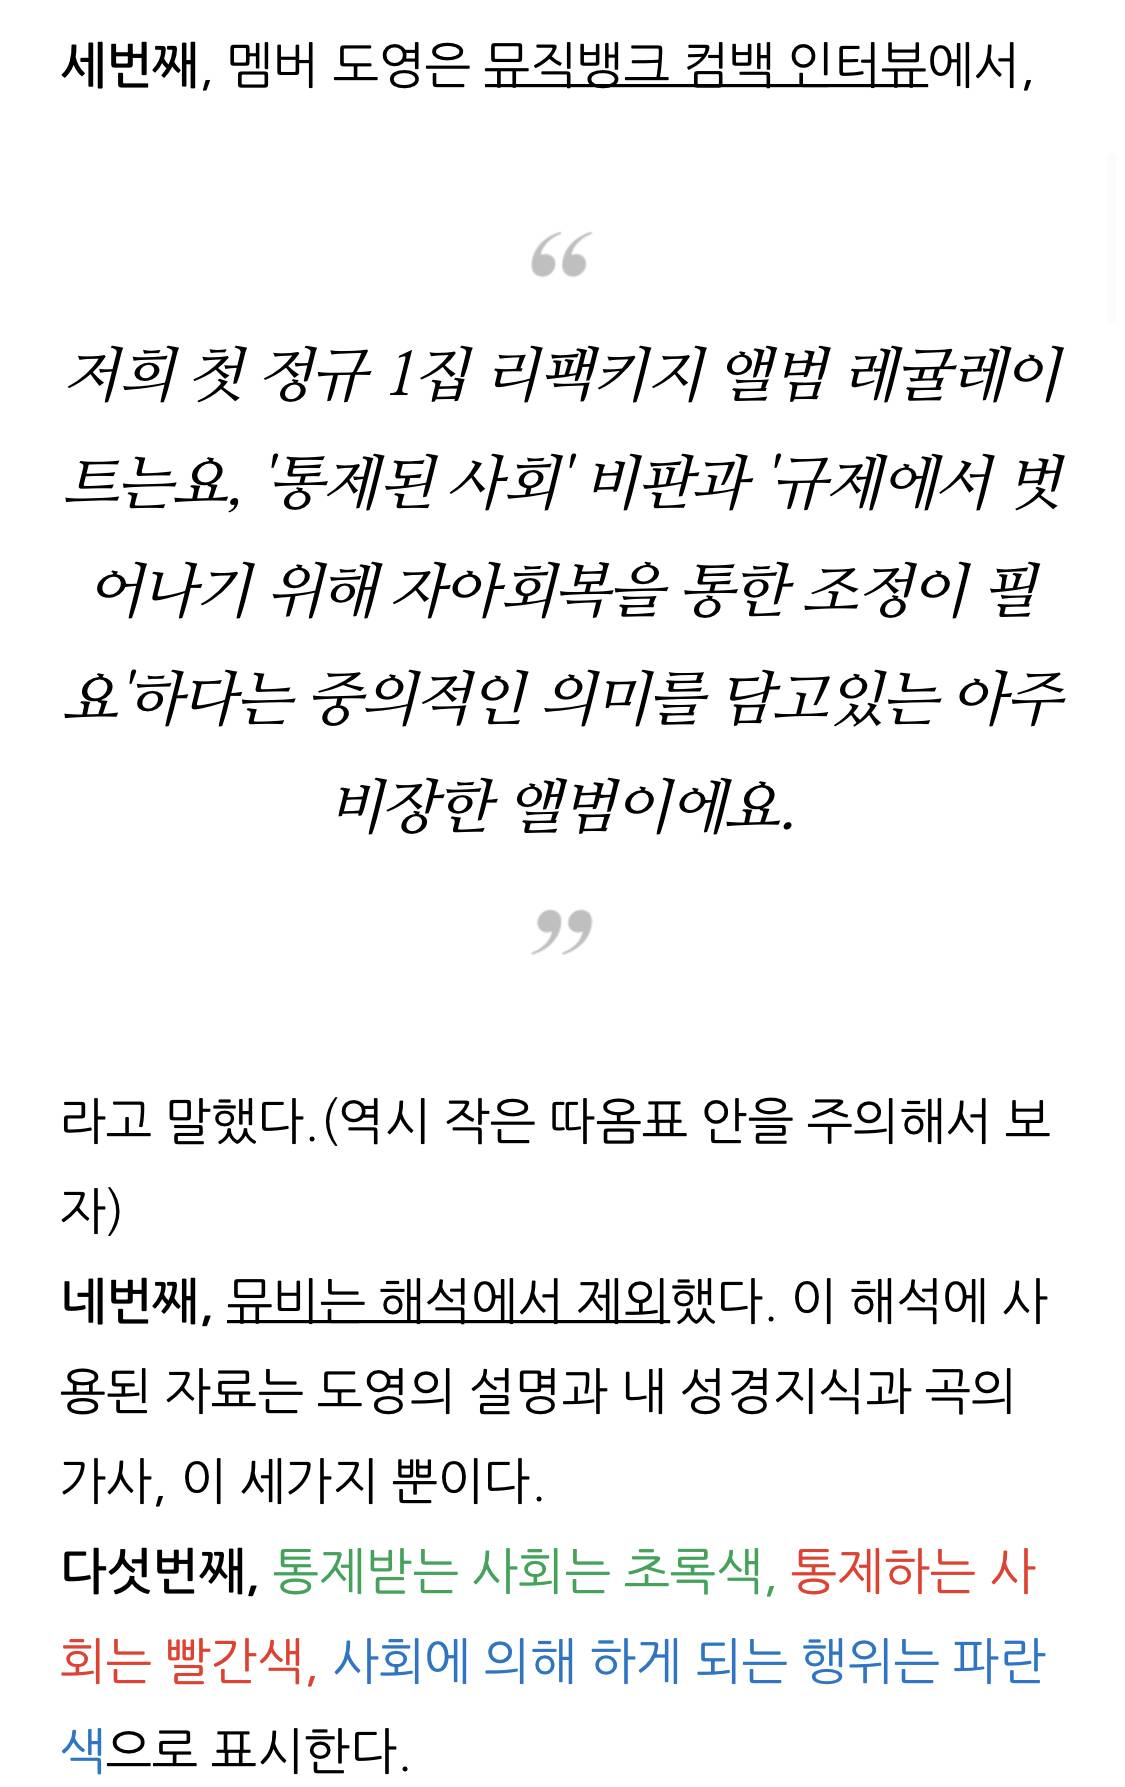 NCT 127 "Simon Says" 뮤비 및 가사 해석과 숨겨진 미장센 (은유적인 연출 표현) | 인스티즈